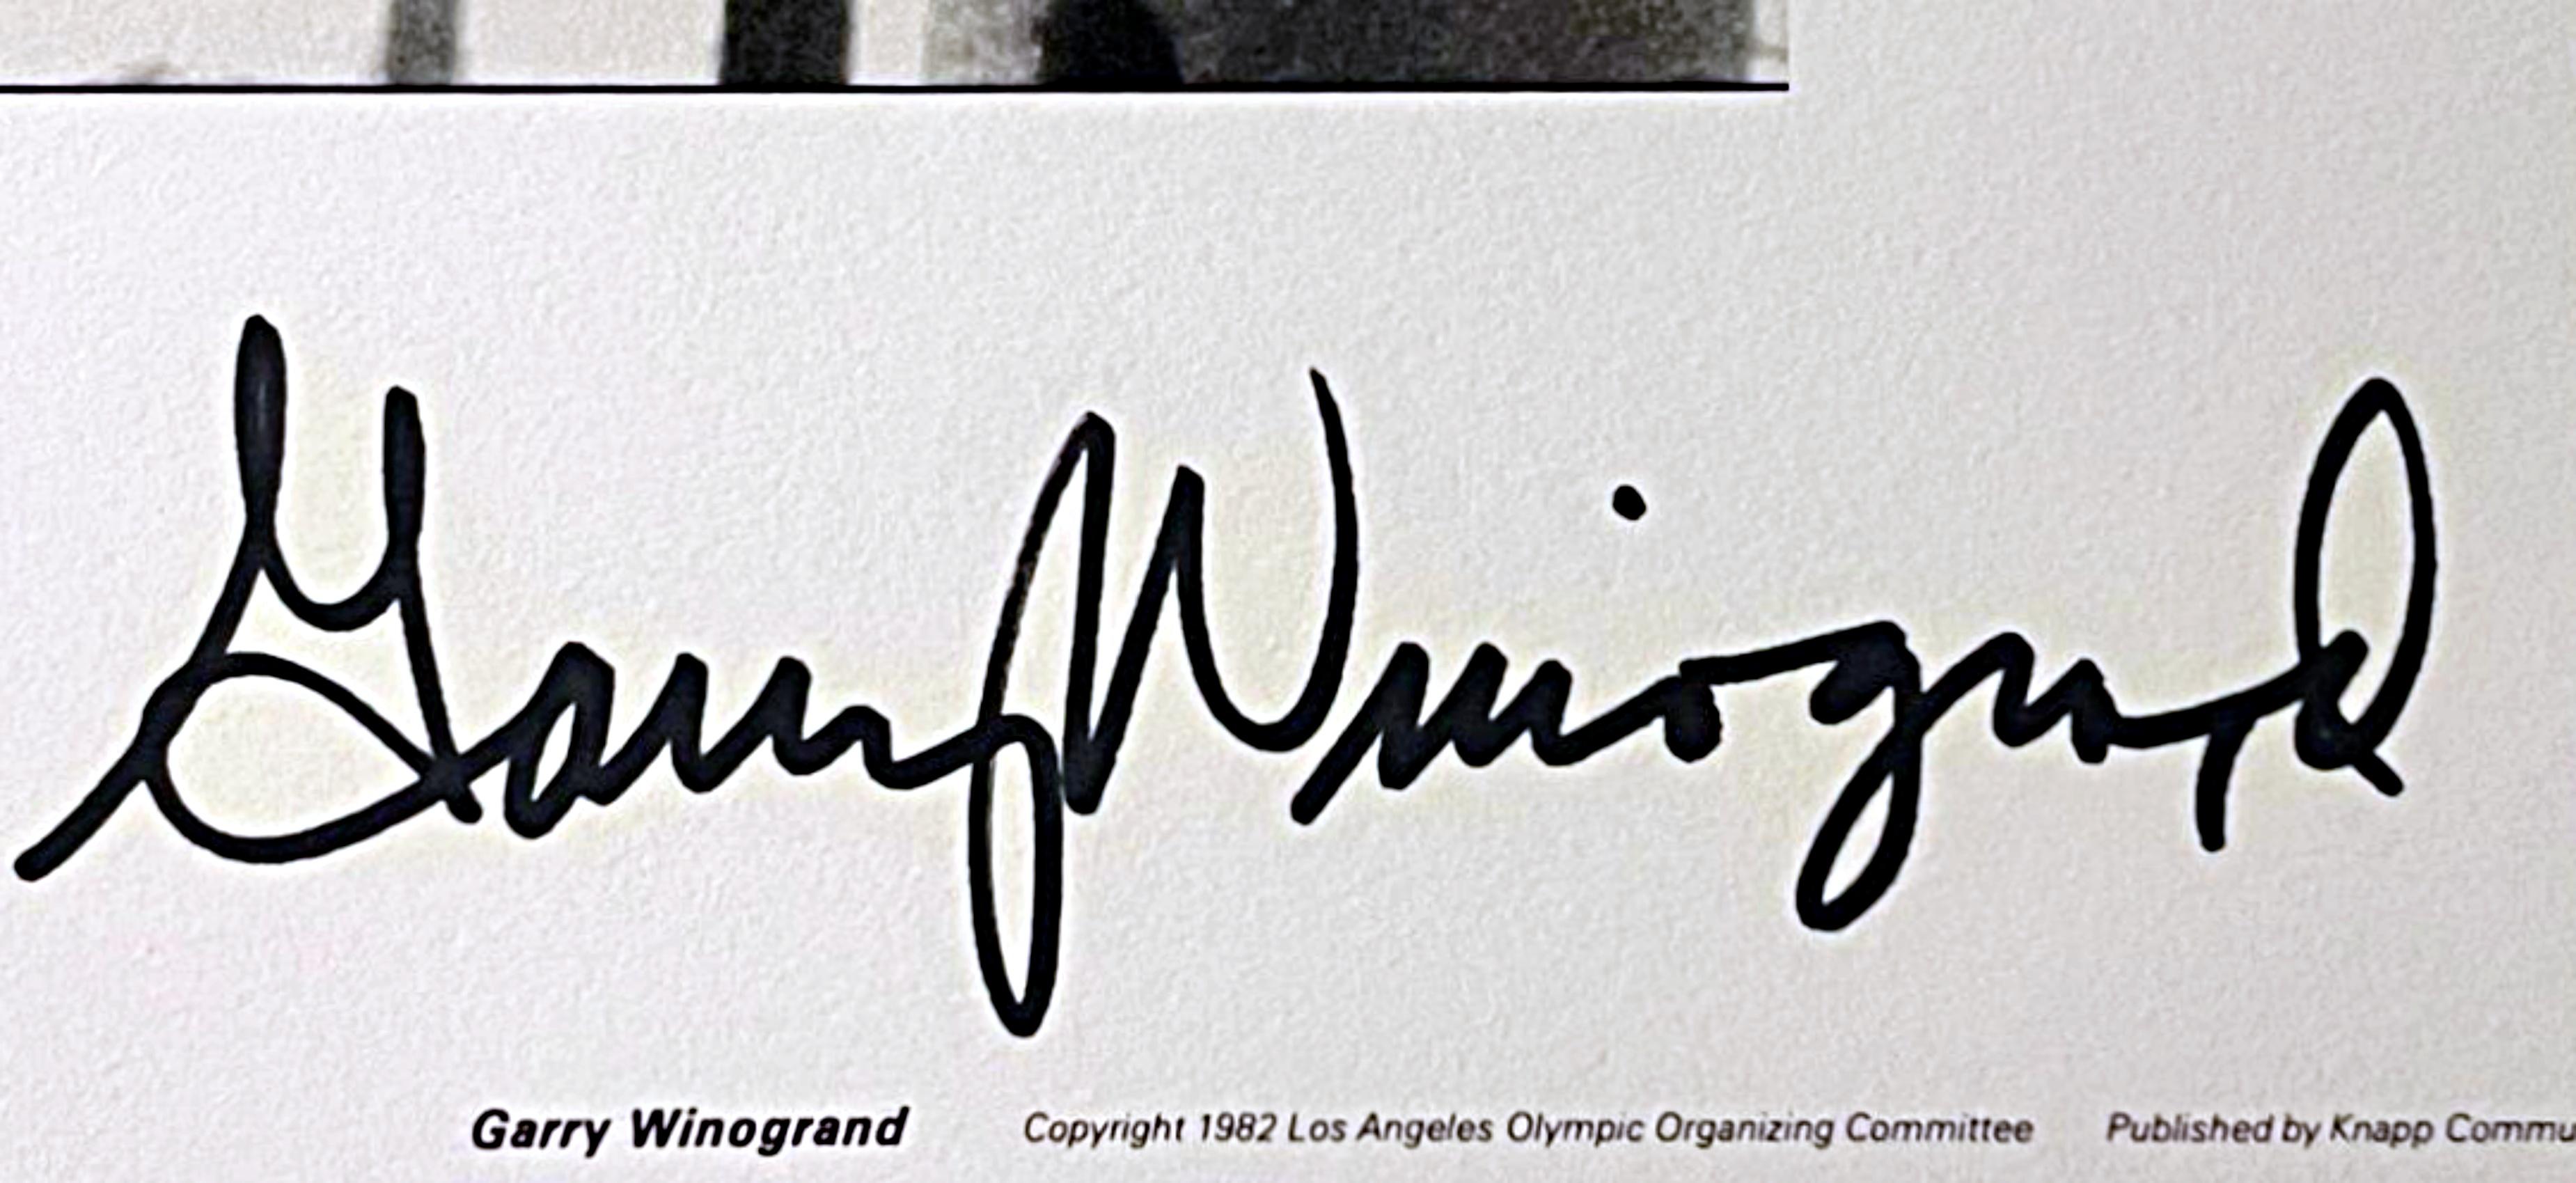 Portrait de Bob Pettis, signé Ed avec COA de l'éditeur, Comité olympique - Print de Garry Winogrand